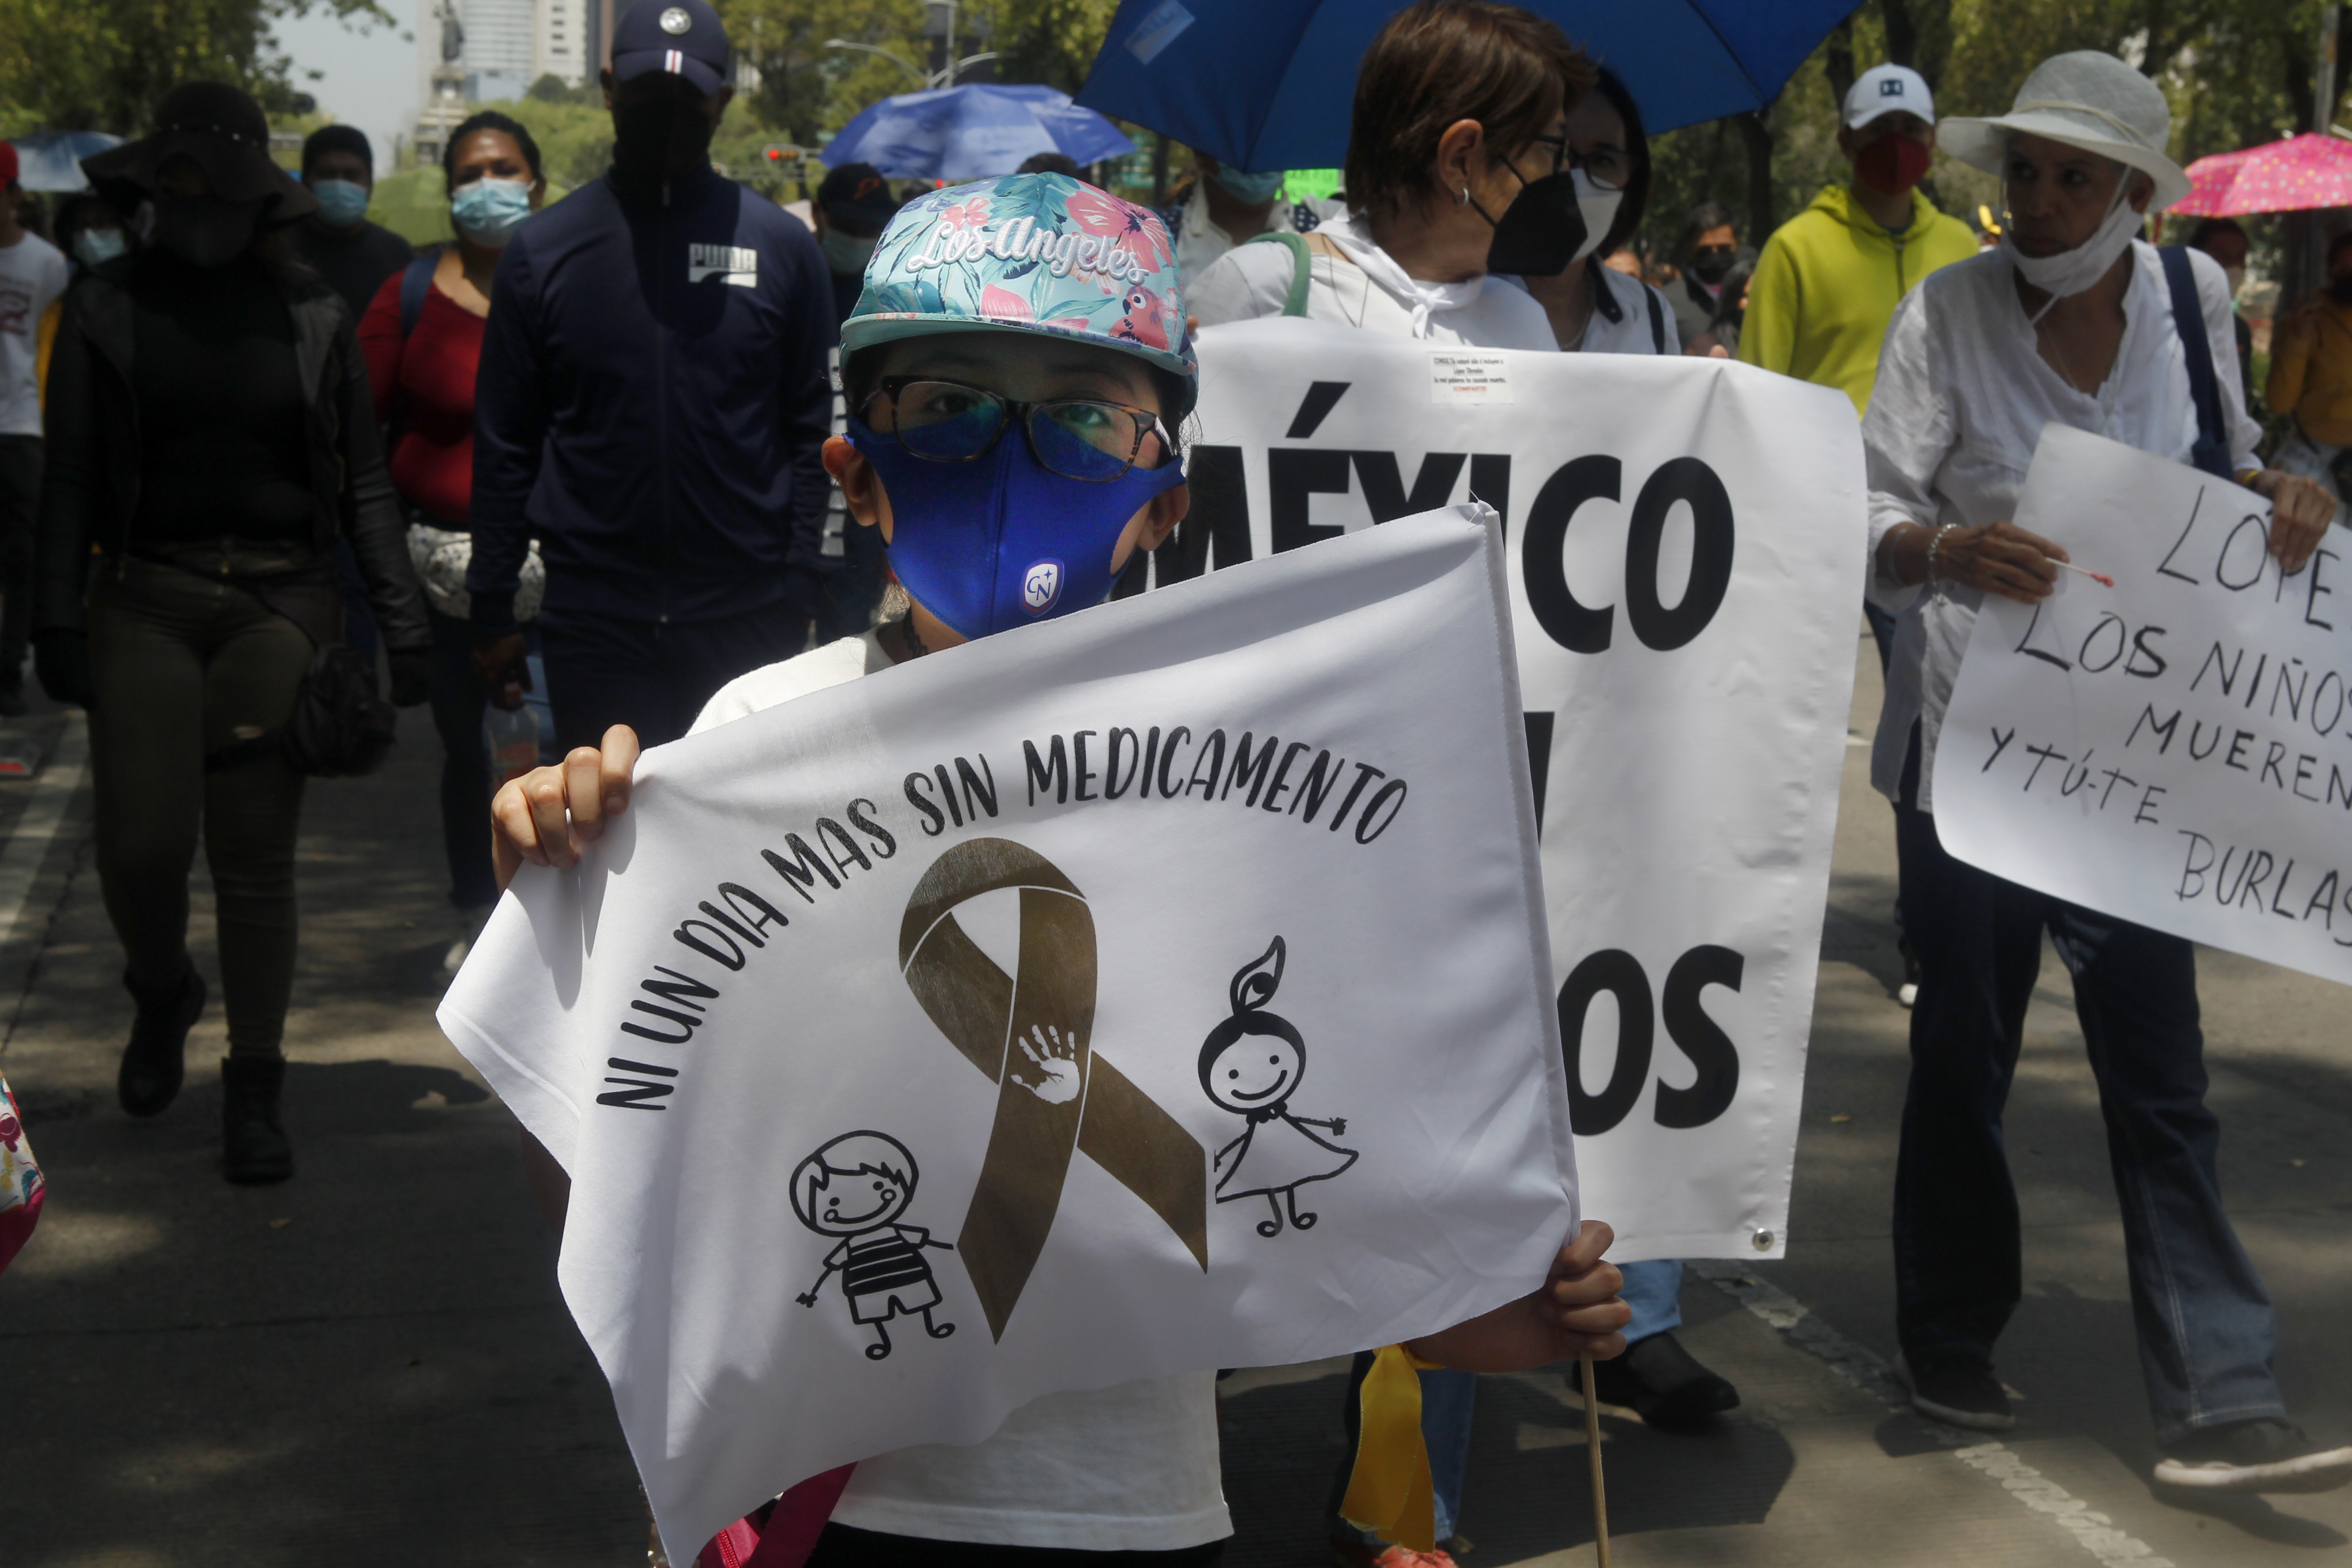 A ellos no, pero al Chapo sí: padres de niños con cáncer criticaron indiferencia de AMLO